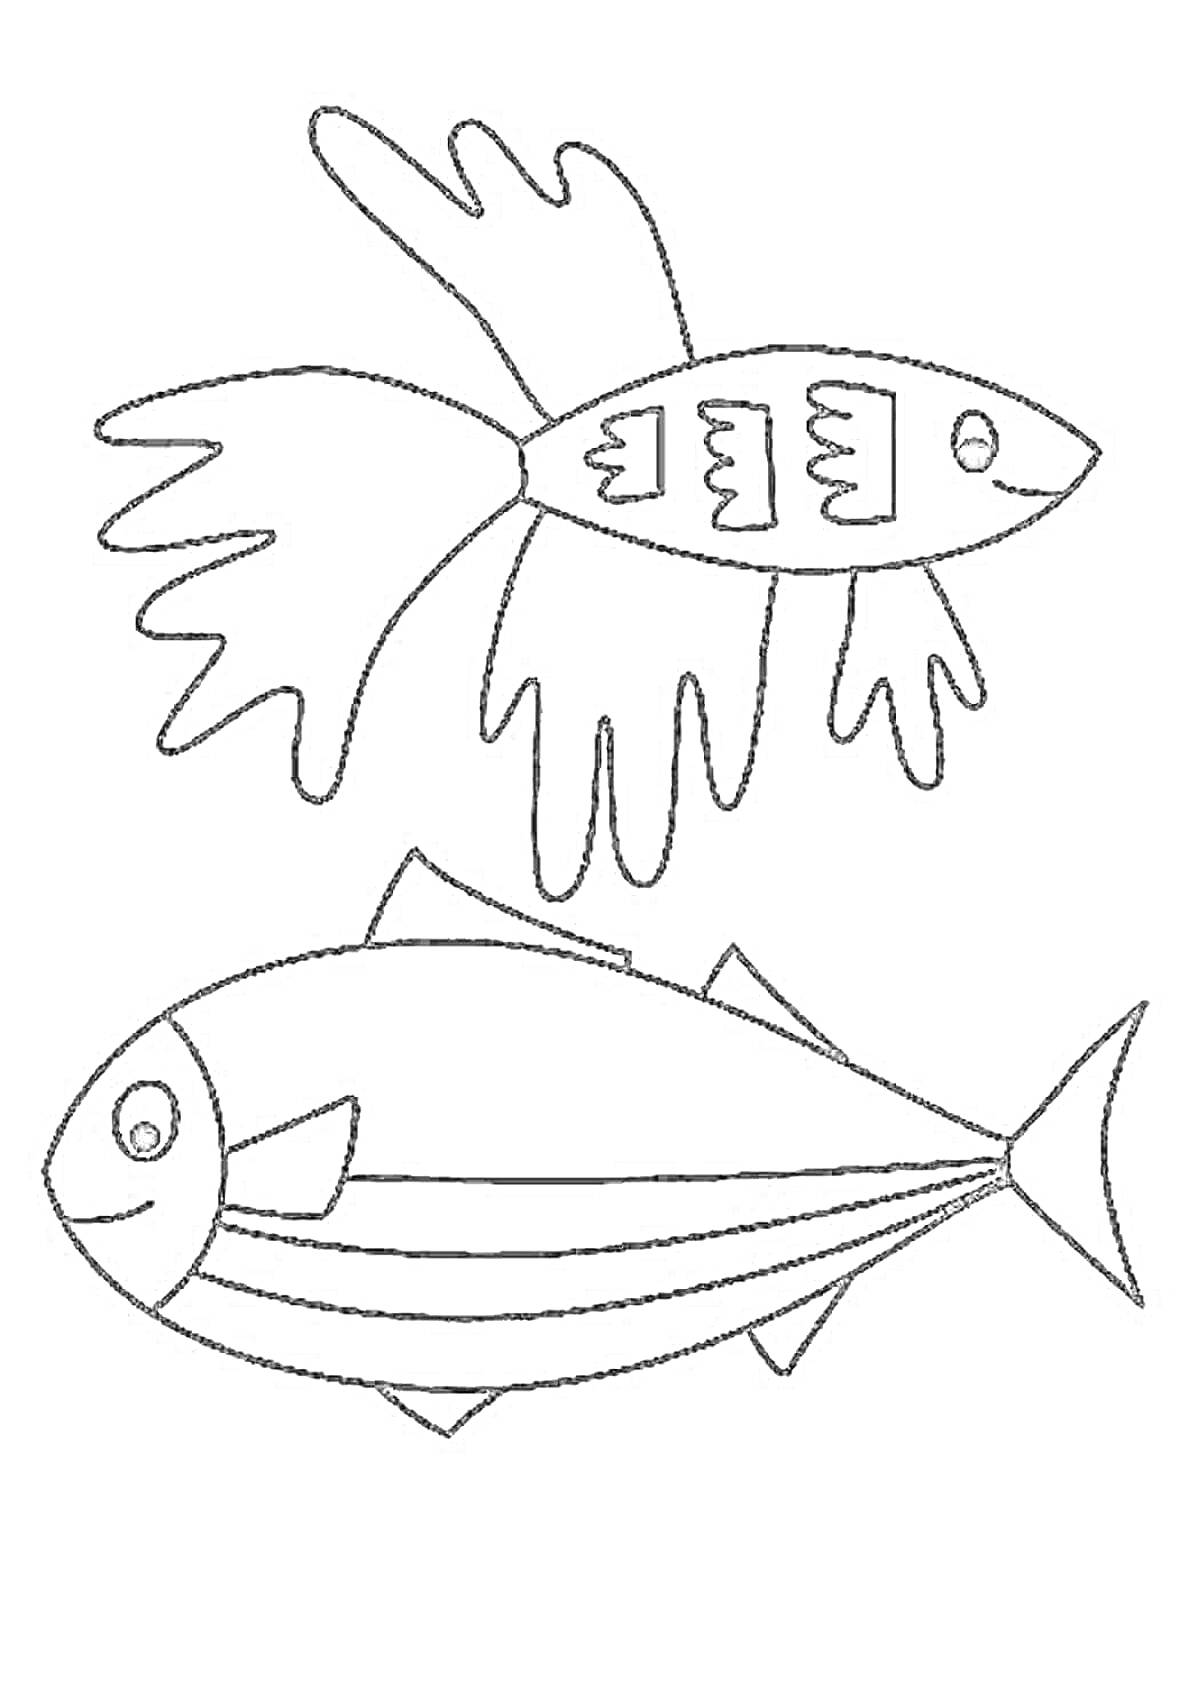 Раскраска две рыбы, одна рыба тунец, другая рыба другой вид, плавники, рот, глаза, полосы